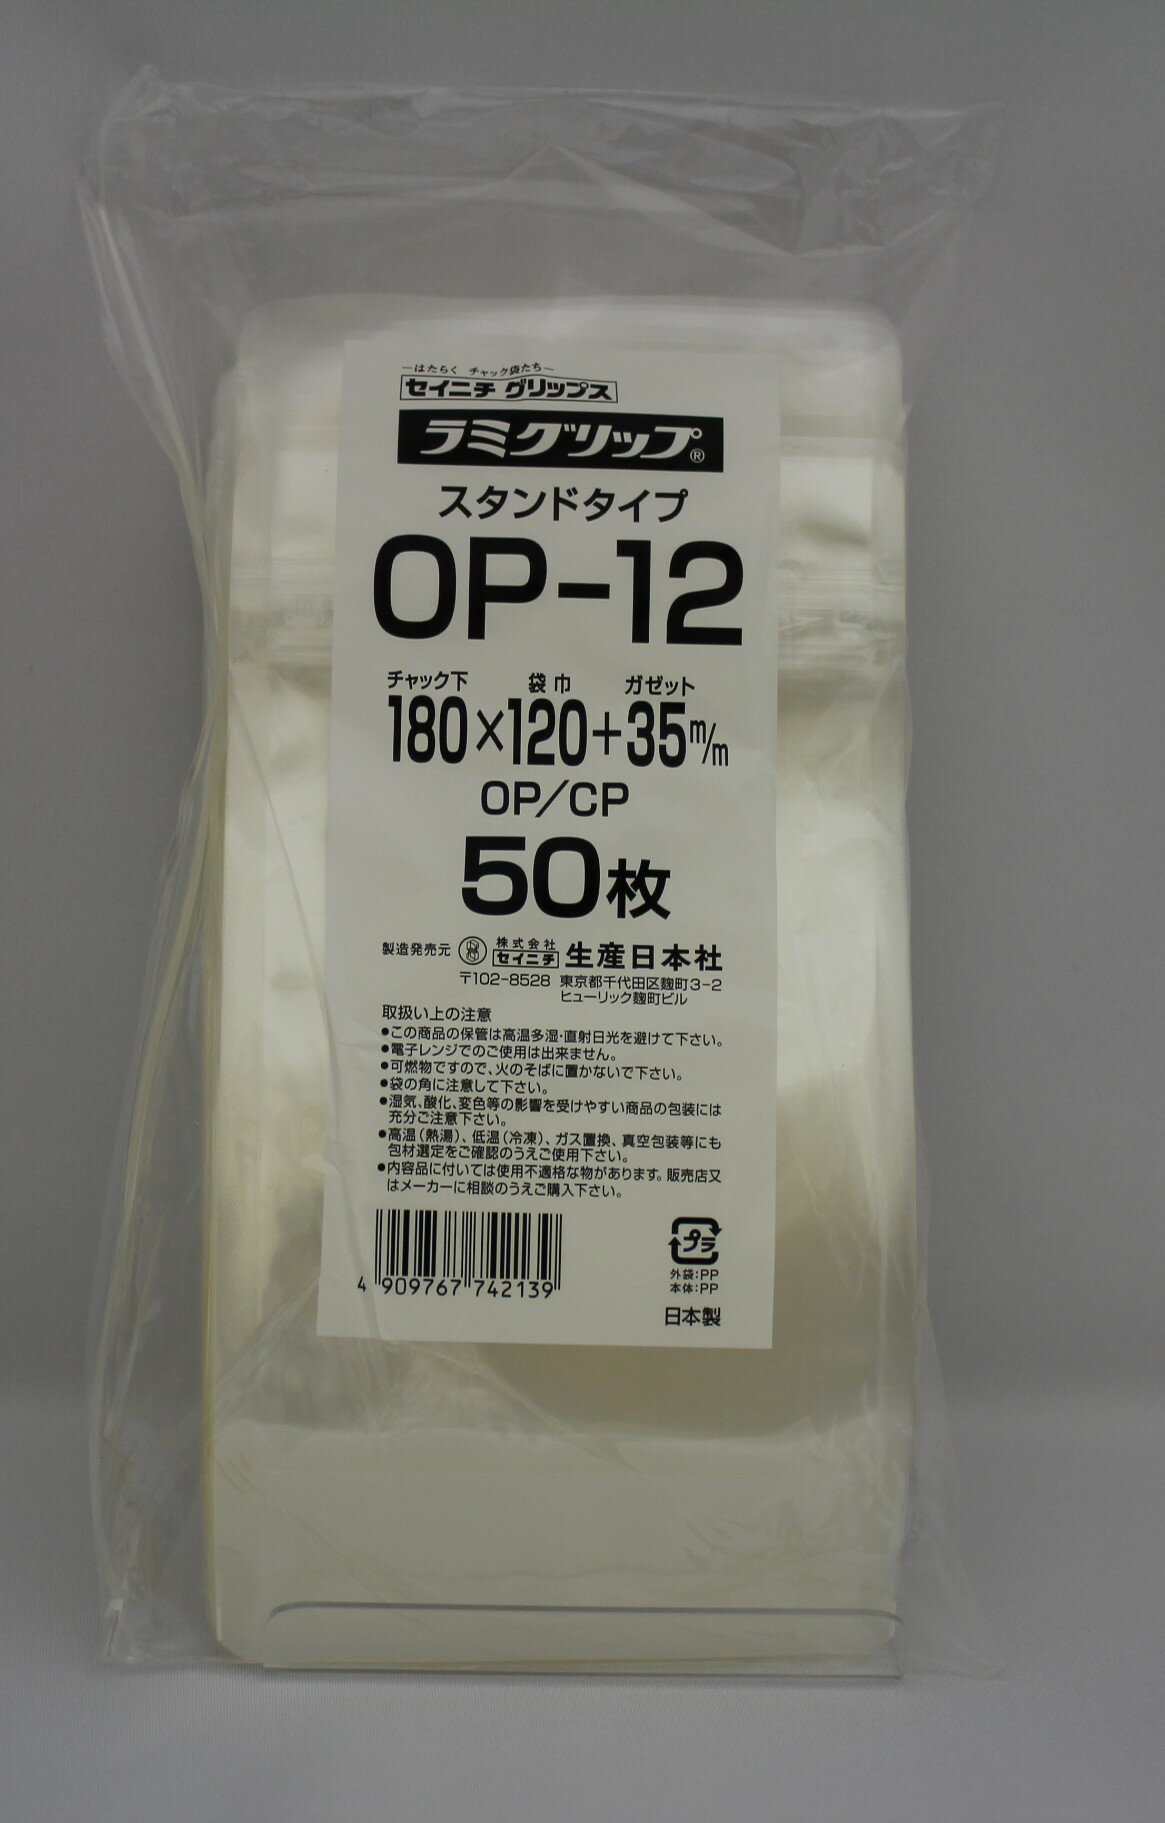 チャック付ラミネートスタンド袋です OP CPフィルムは防湿性があり乾燥剤が使用できます 乾燥農水産加工品などの食品関係に最適です ラミグリップ OP-12  スタンド OPタイプ チャック付ポリ袋 50枚入 日本製 正規店仕入れの